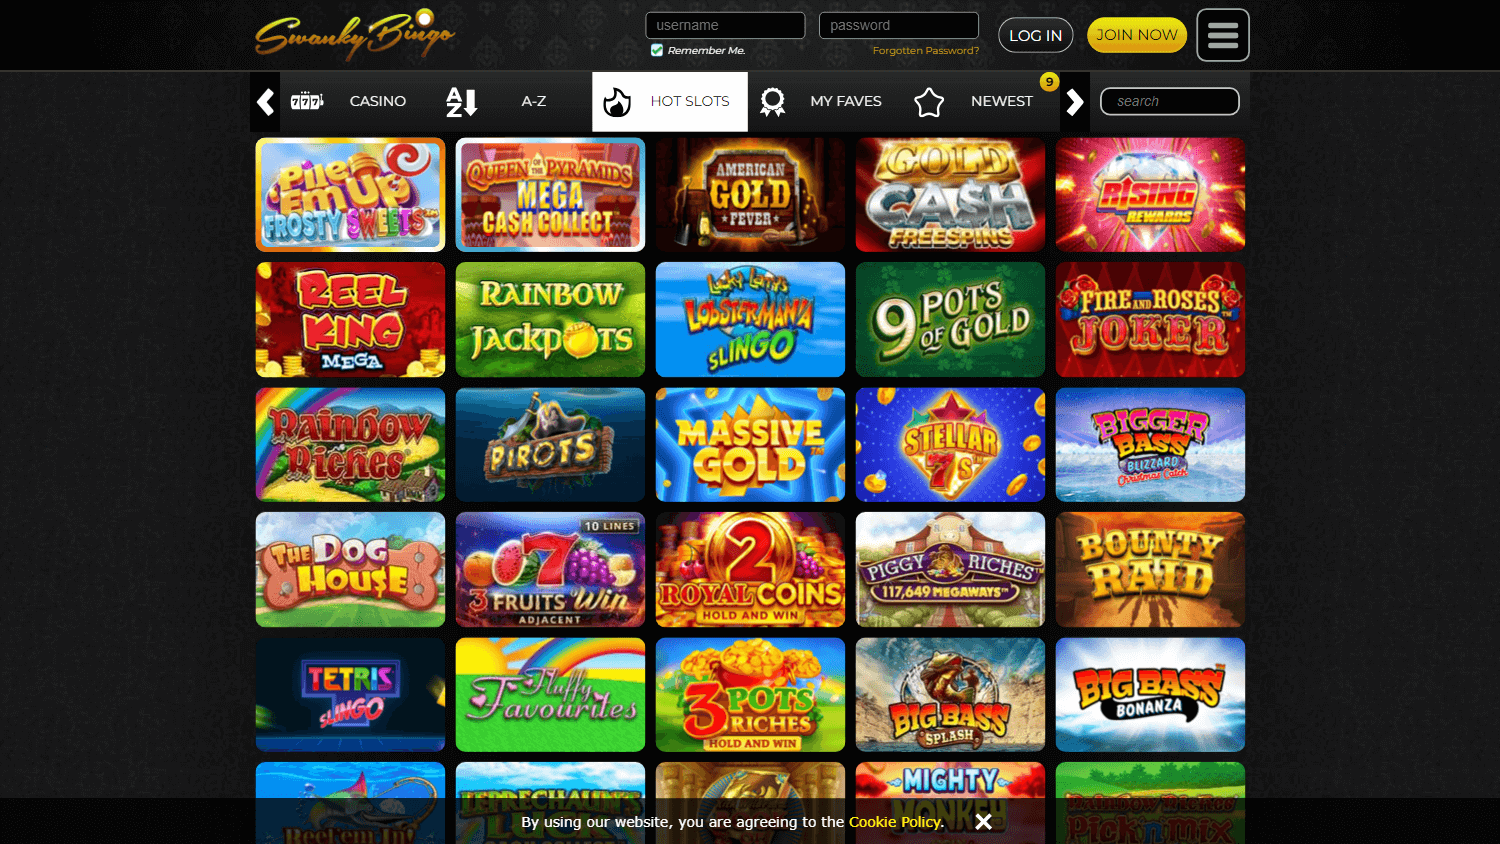 swanky_bingo_casino_game_gallery_desktop